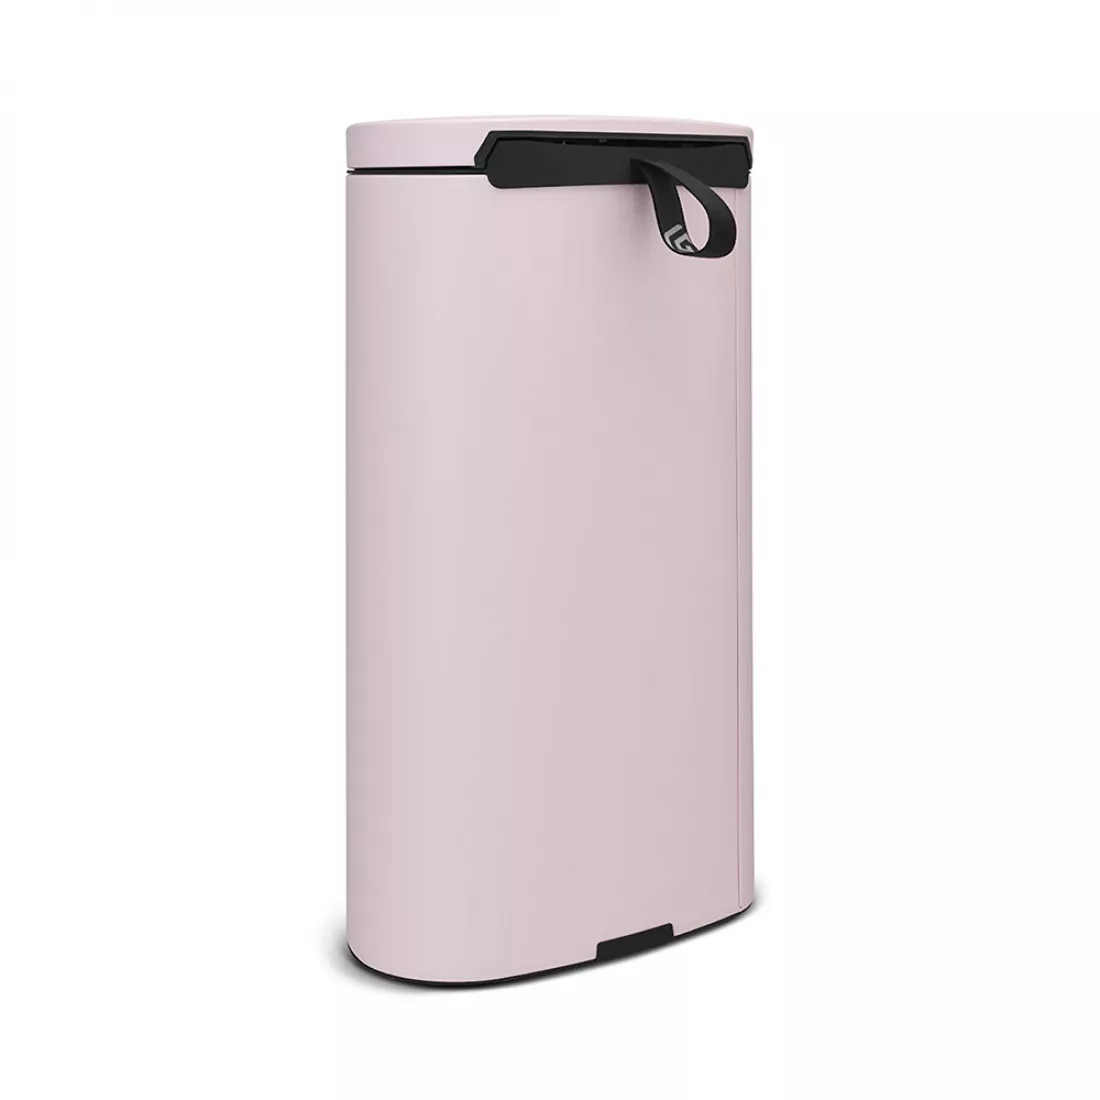 Контейнер для мусора с педалью, объем: 30 л, материал: нержавеющая сталь, цвет: розовый, серия FlatBack, B103988, BRABANTIA, Бельгия от магазина ЛесКонПром.ру